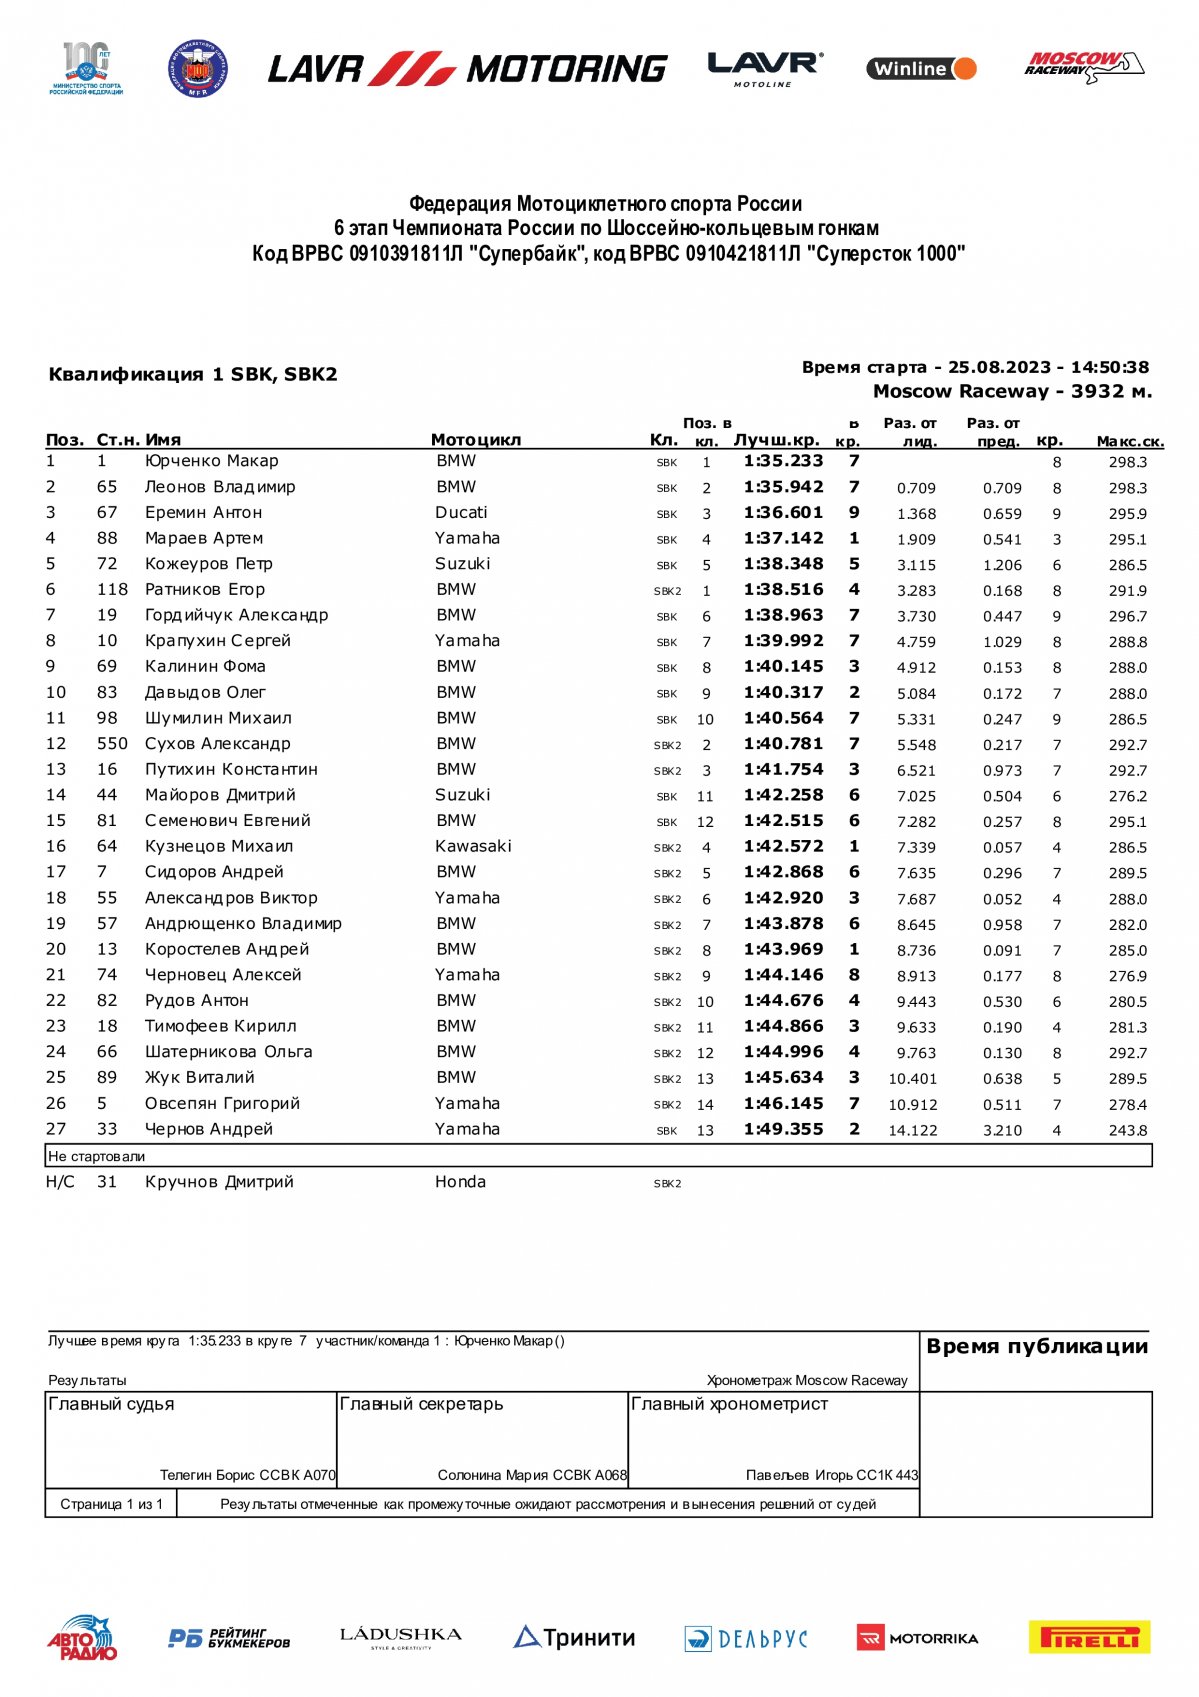 Результаты квалификации №1 6 этапа Superbike, Чемпионат России Lavr Motoring - 25.08.2023